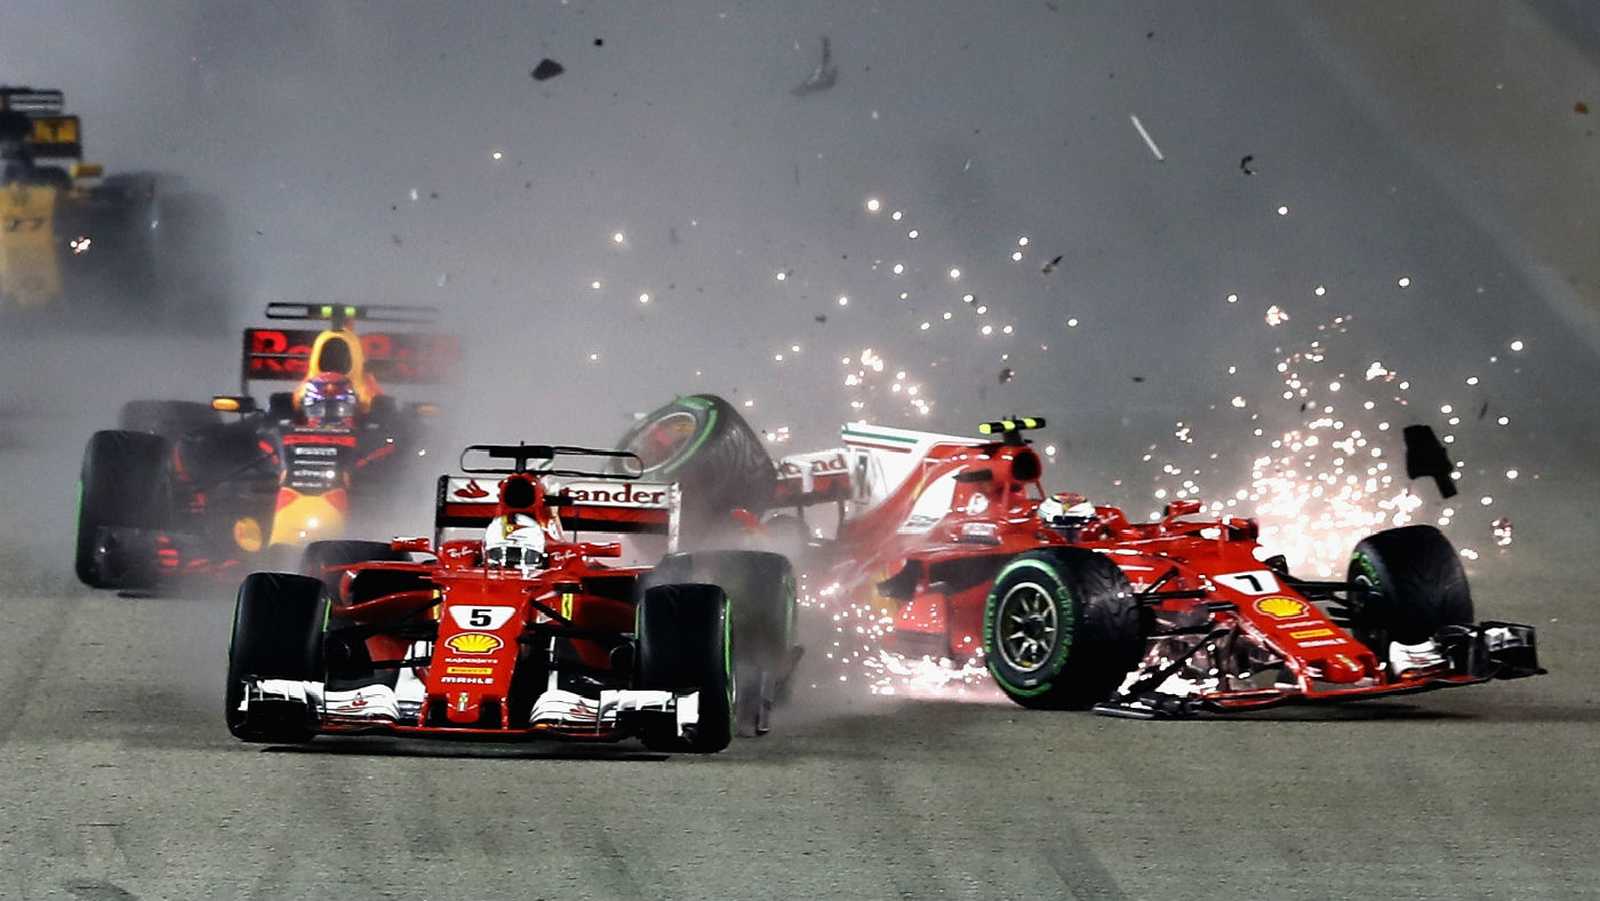 E notoriamente no GP de Singapura de 2017, quando Vettel espremeu Max Verstappen contra Räikkönen. O acidente foi determinante para Lewis Hamilton virar a chave do campeonato